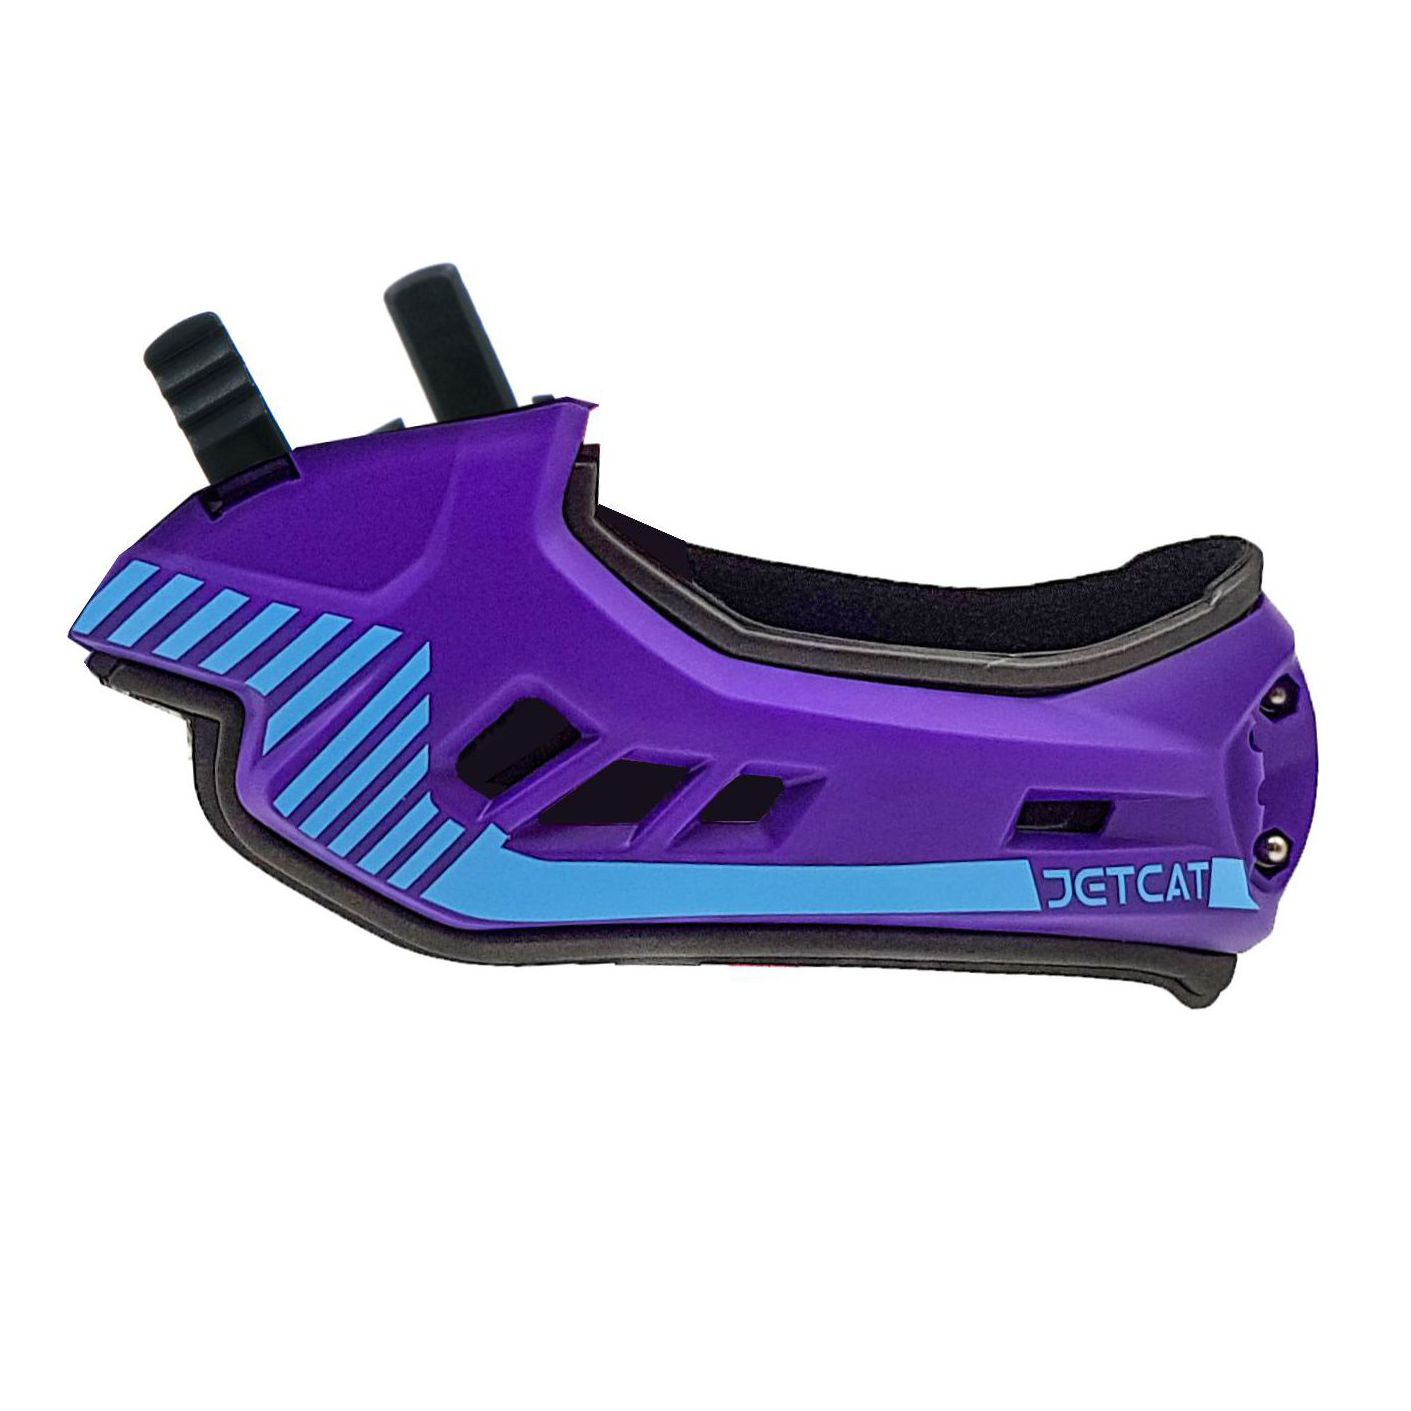 Чингарда с вкладкой для шлема JetCat Raptor, фиолетовый велосипеды двухподвесы forward raptor 27 5 1 0 год 2022 фиолетовый ростовка 16